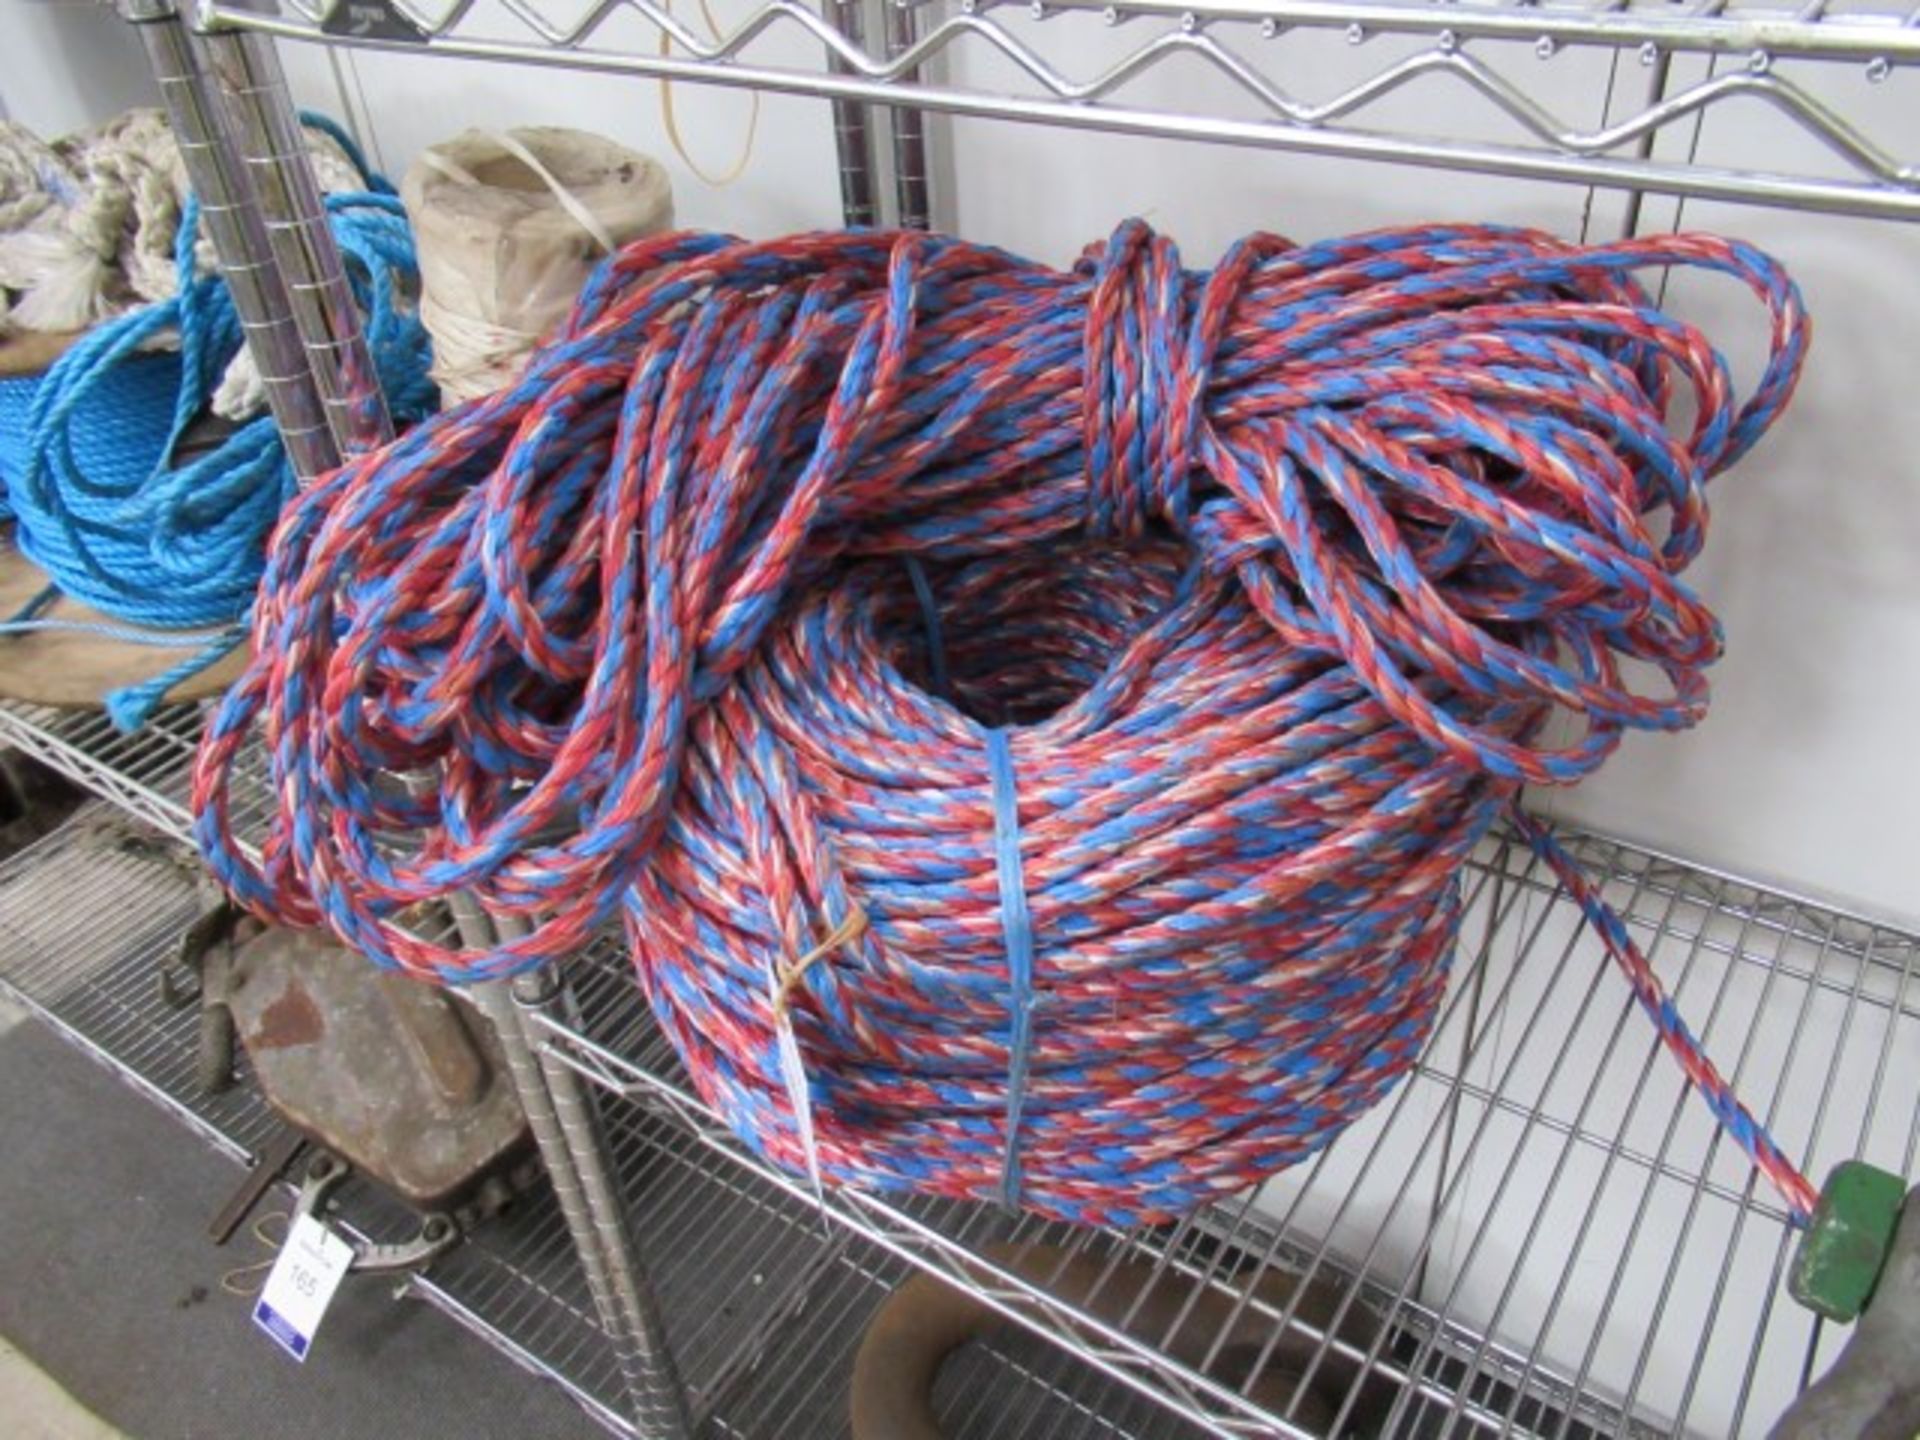 Quantity of Nylon Rope